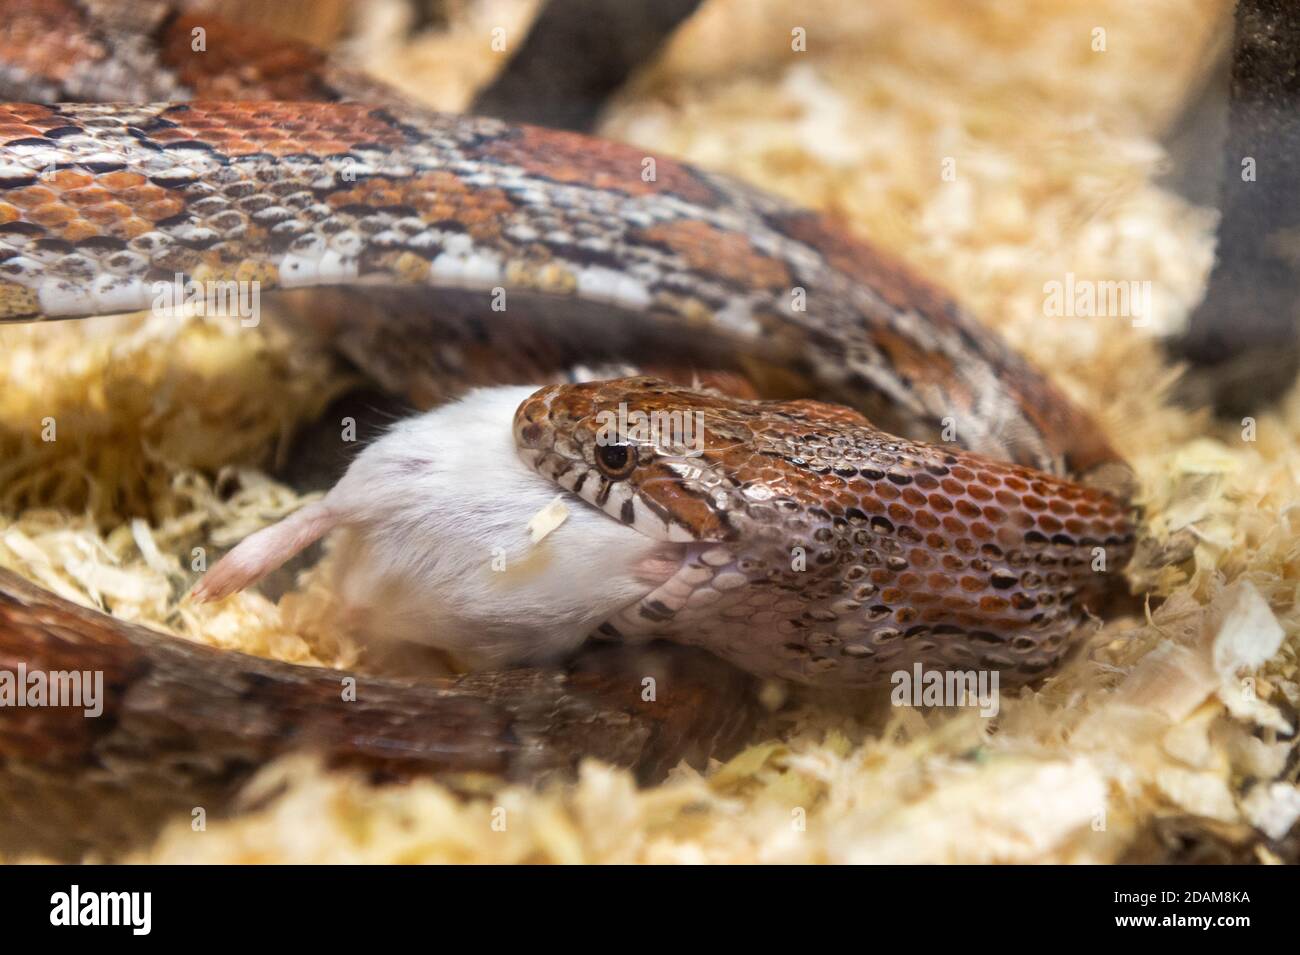 Il serpente domestico del mais - Pantherophis guttatus - mangia un pasto di un mouse morto in un carro armato in un negozio dell'animale domestico. Foto Stock